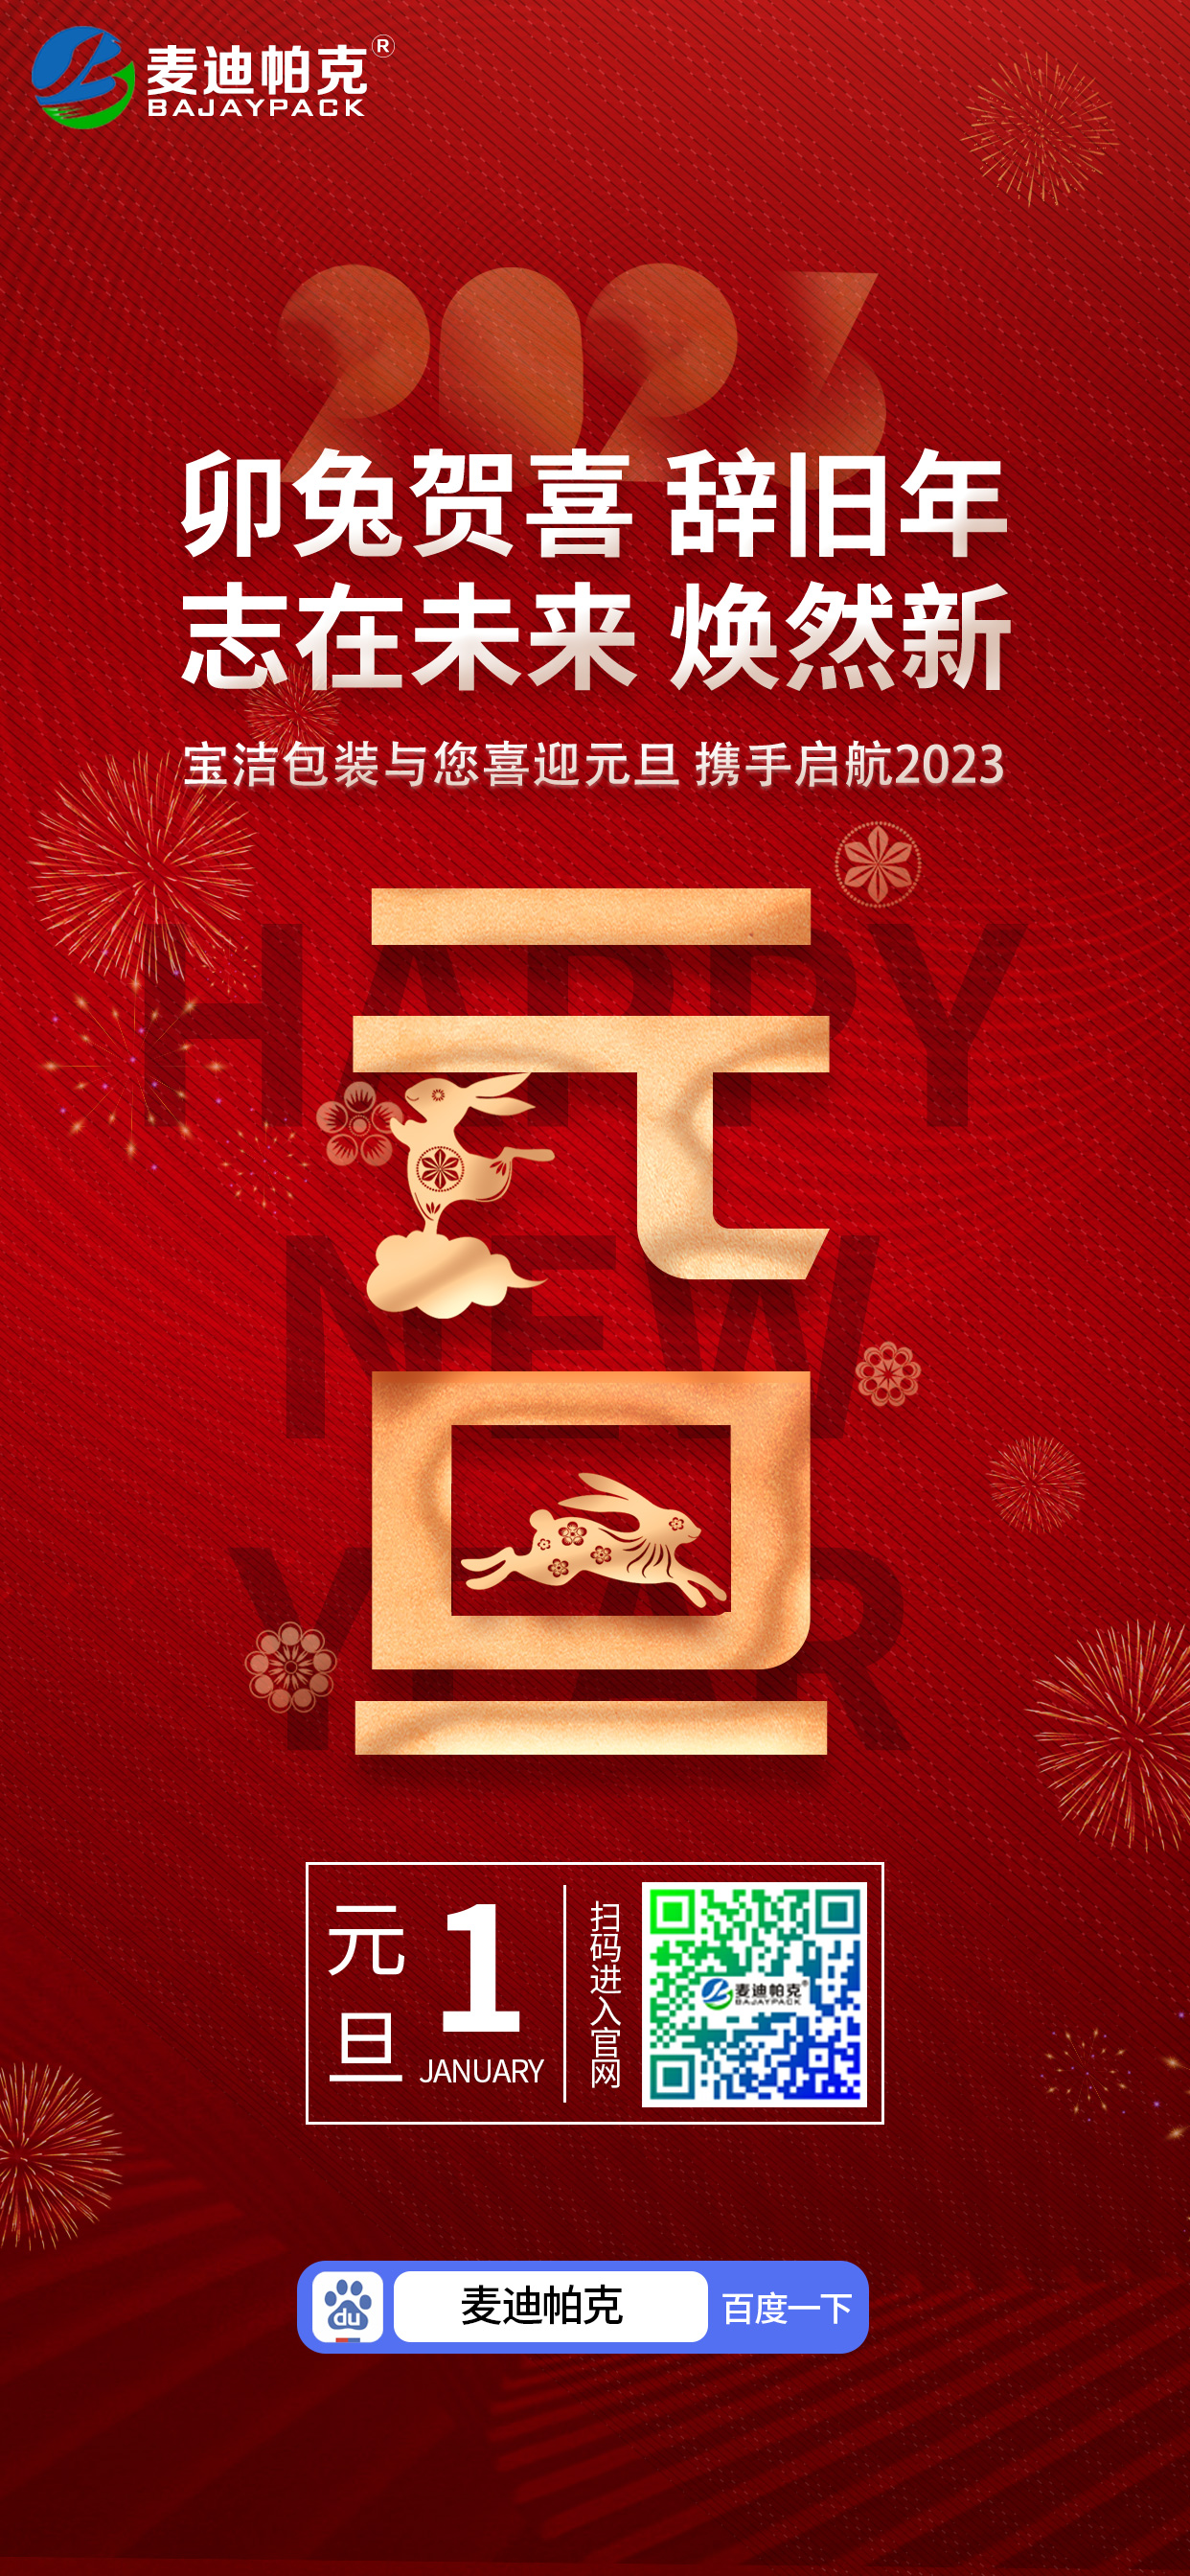 万搏平台 - 万搏平台app(中国)有限公司
祝大家元旦快乐！